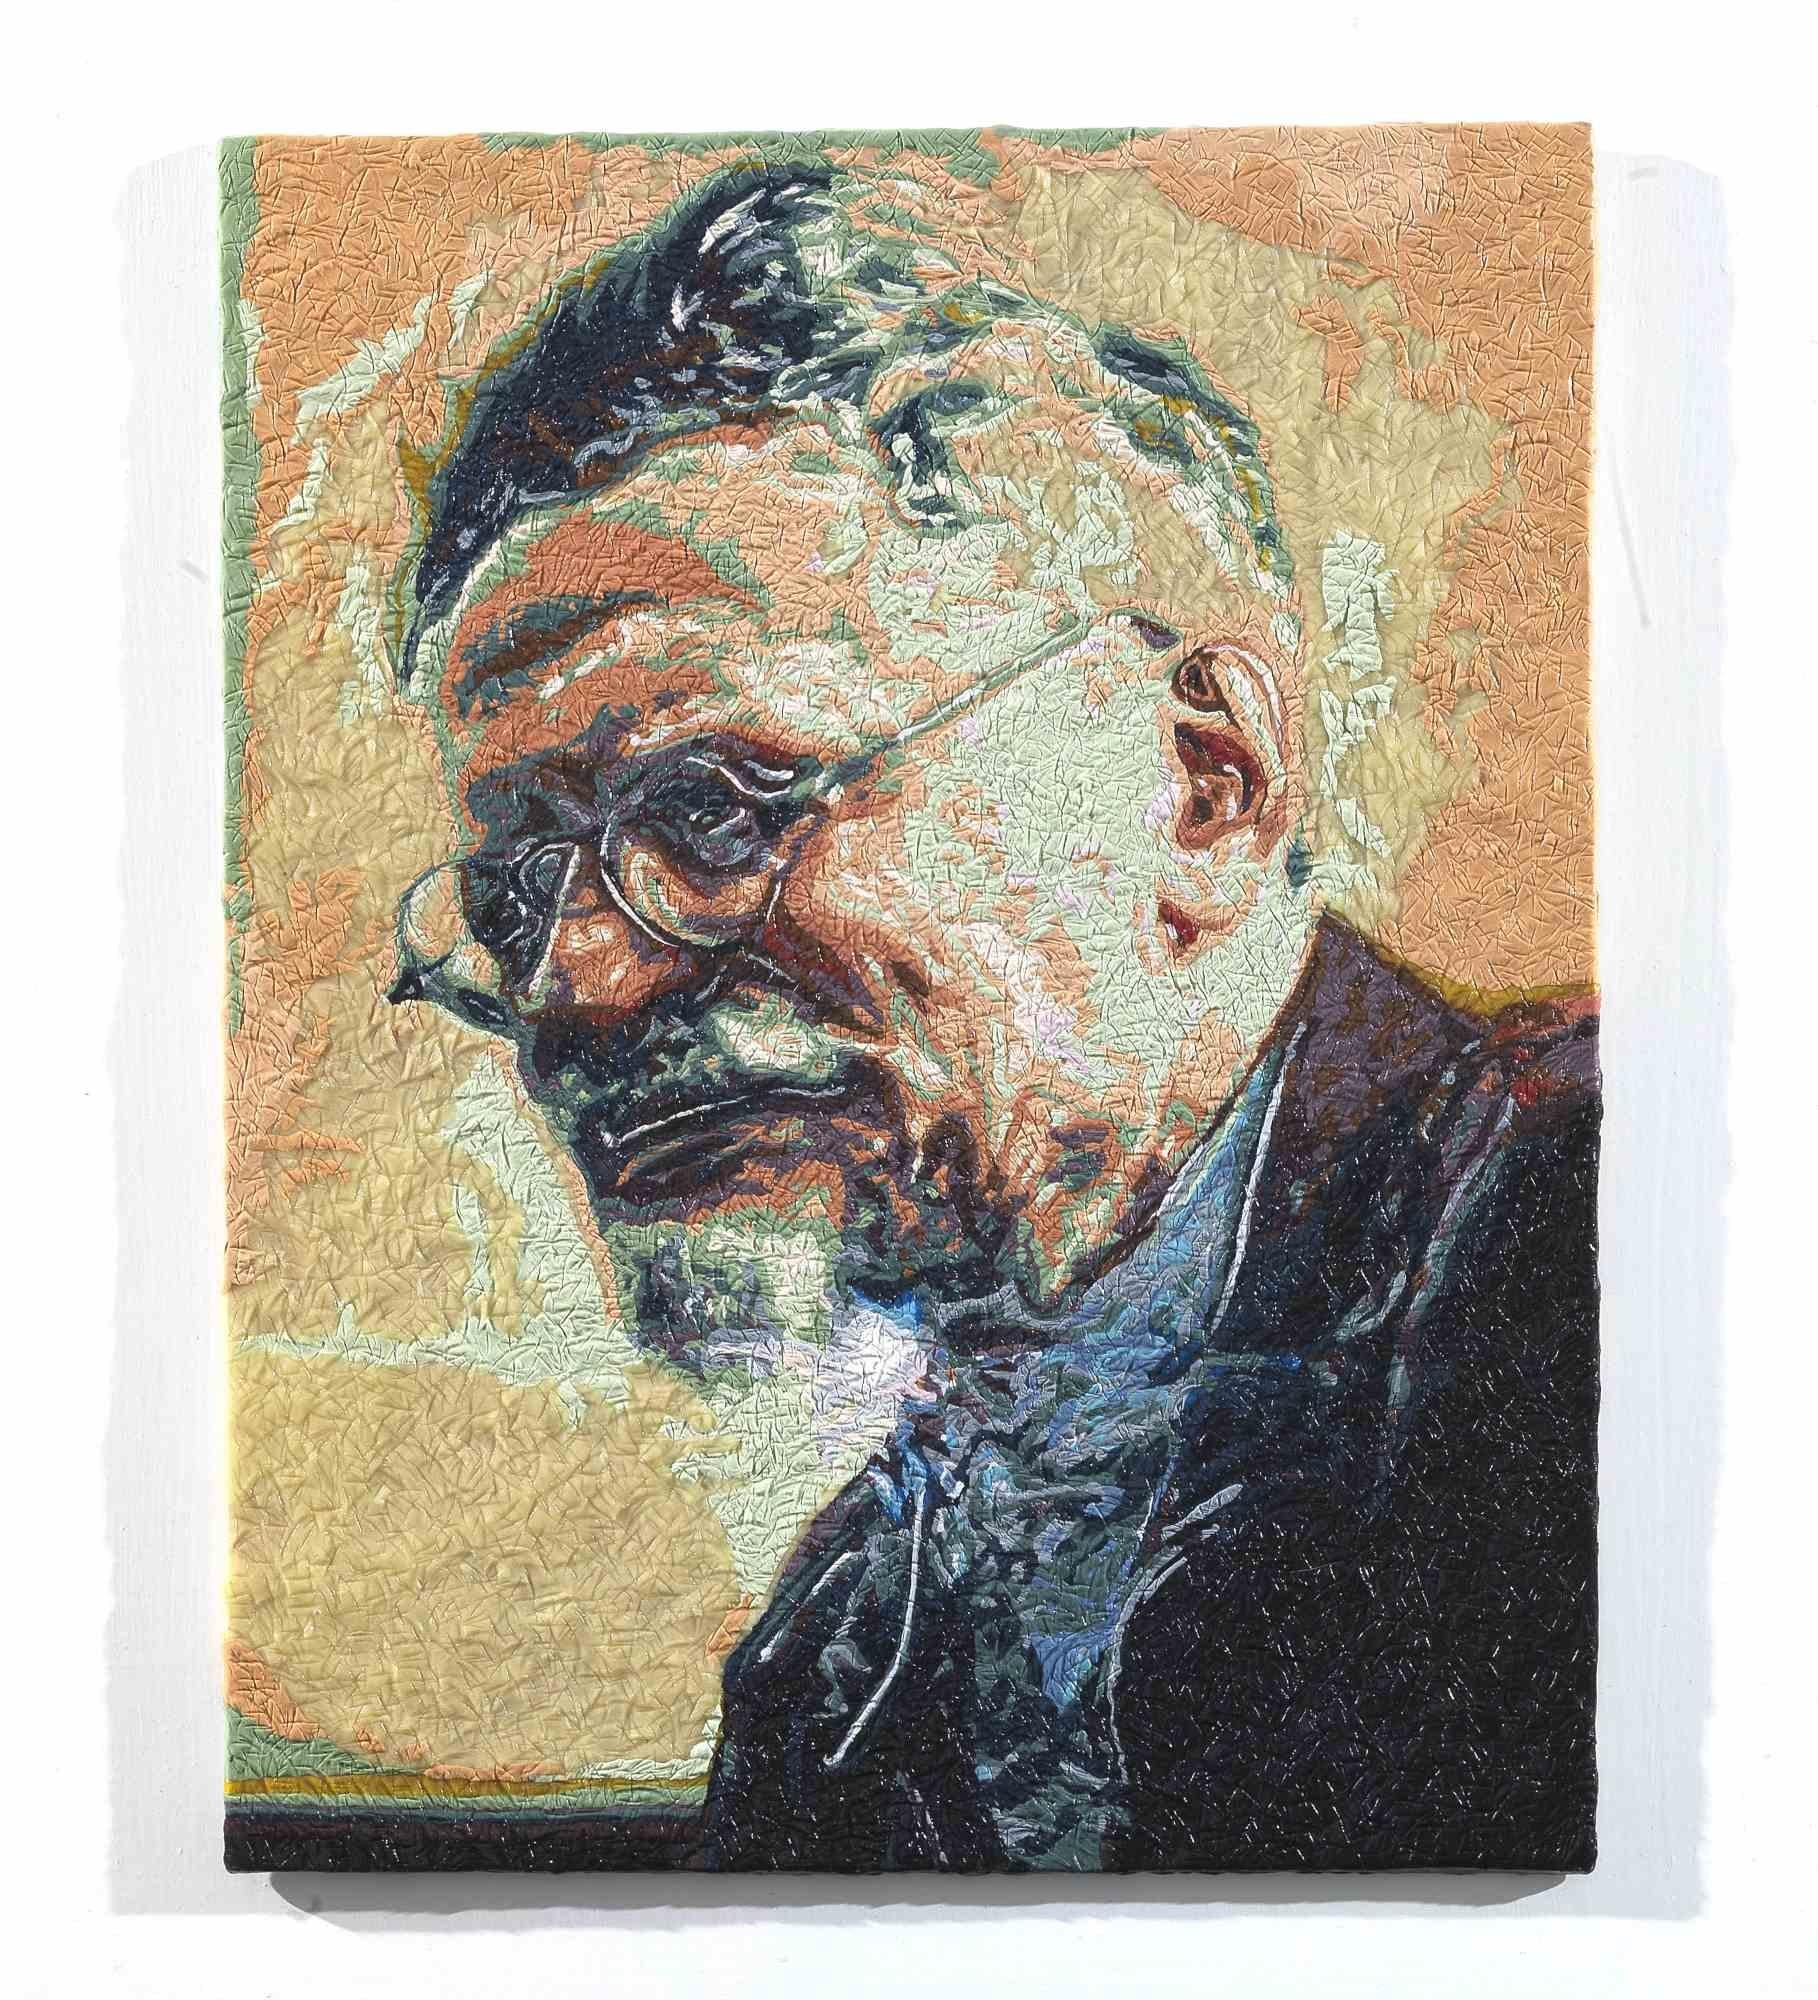 Trotsky - Mixed Media by Maurizio Savini - 2015